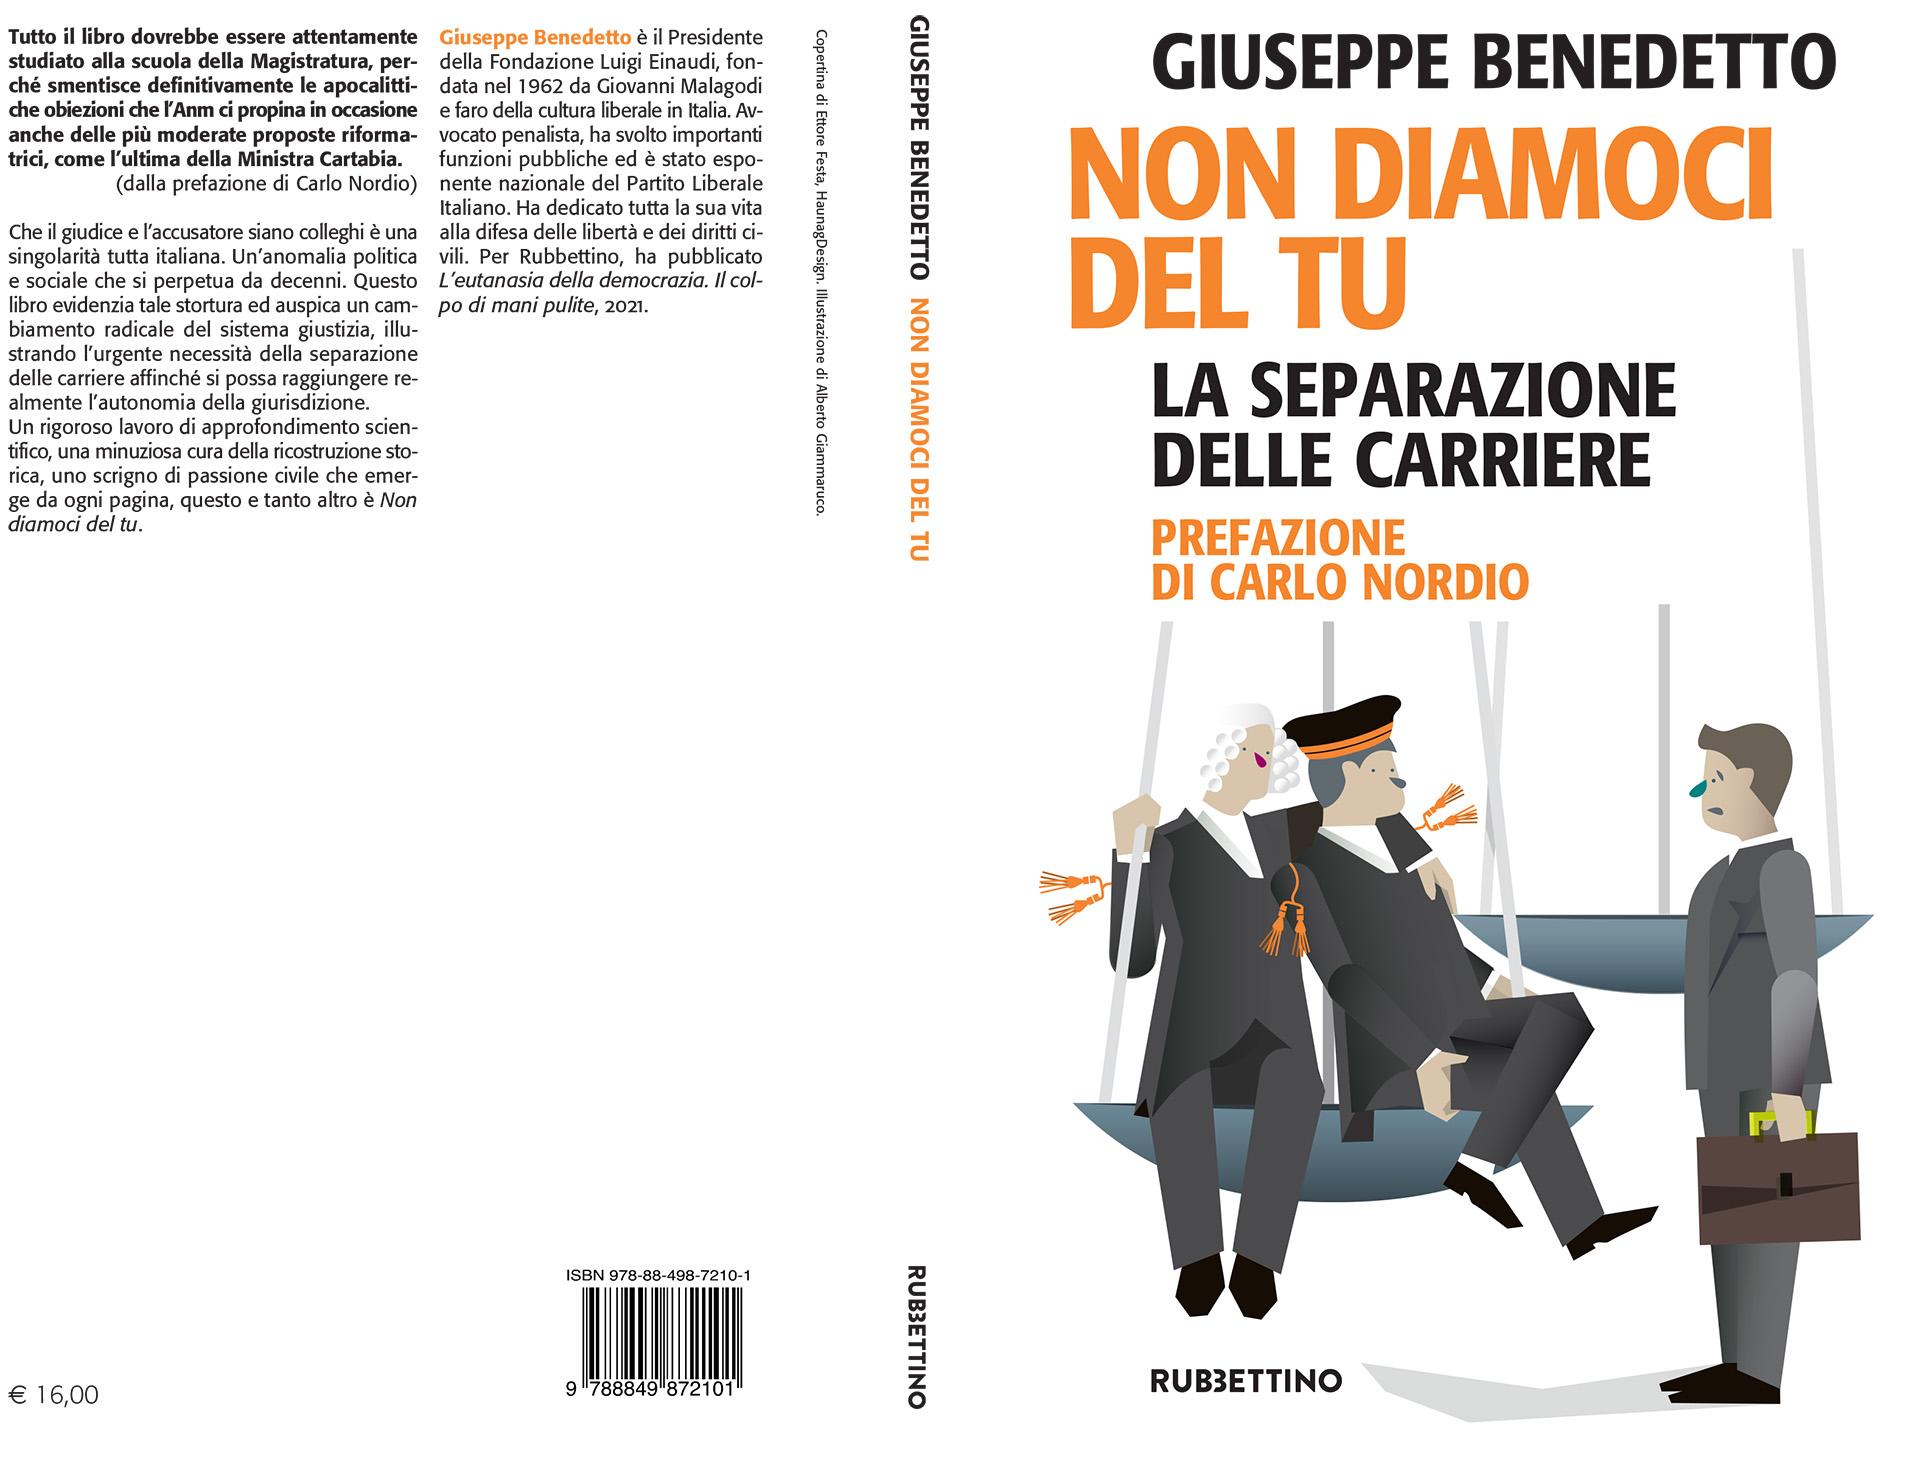 Presentazione del libro di Giuseppe Benedetto “Non diamoci del tu. La separazione delle carriere” (Rubettino) – radioradicale.it